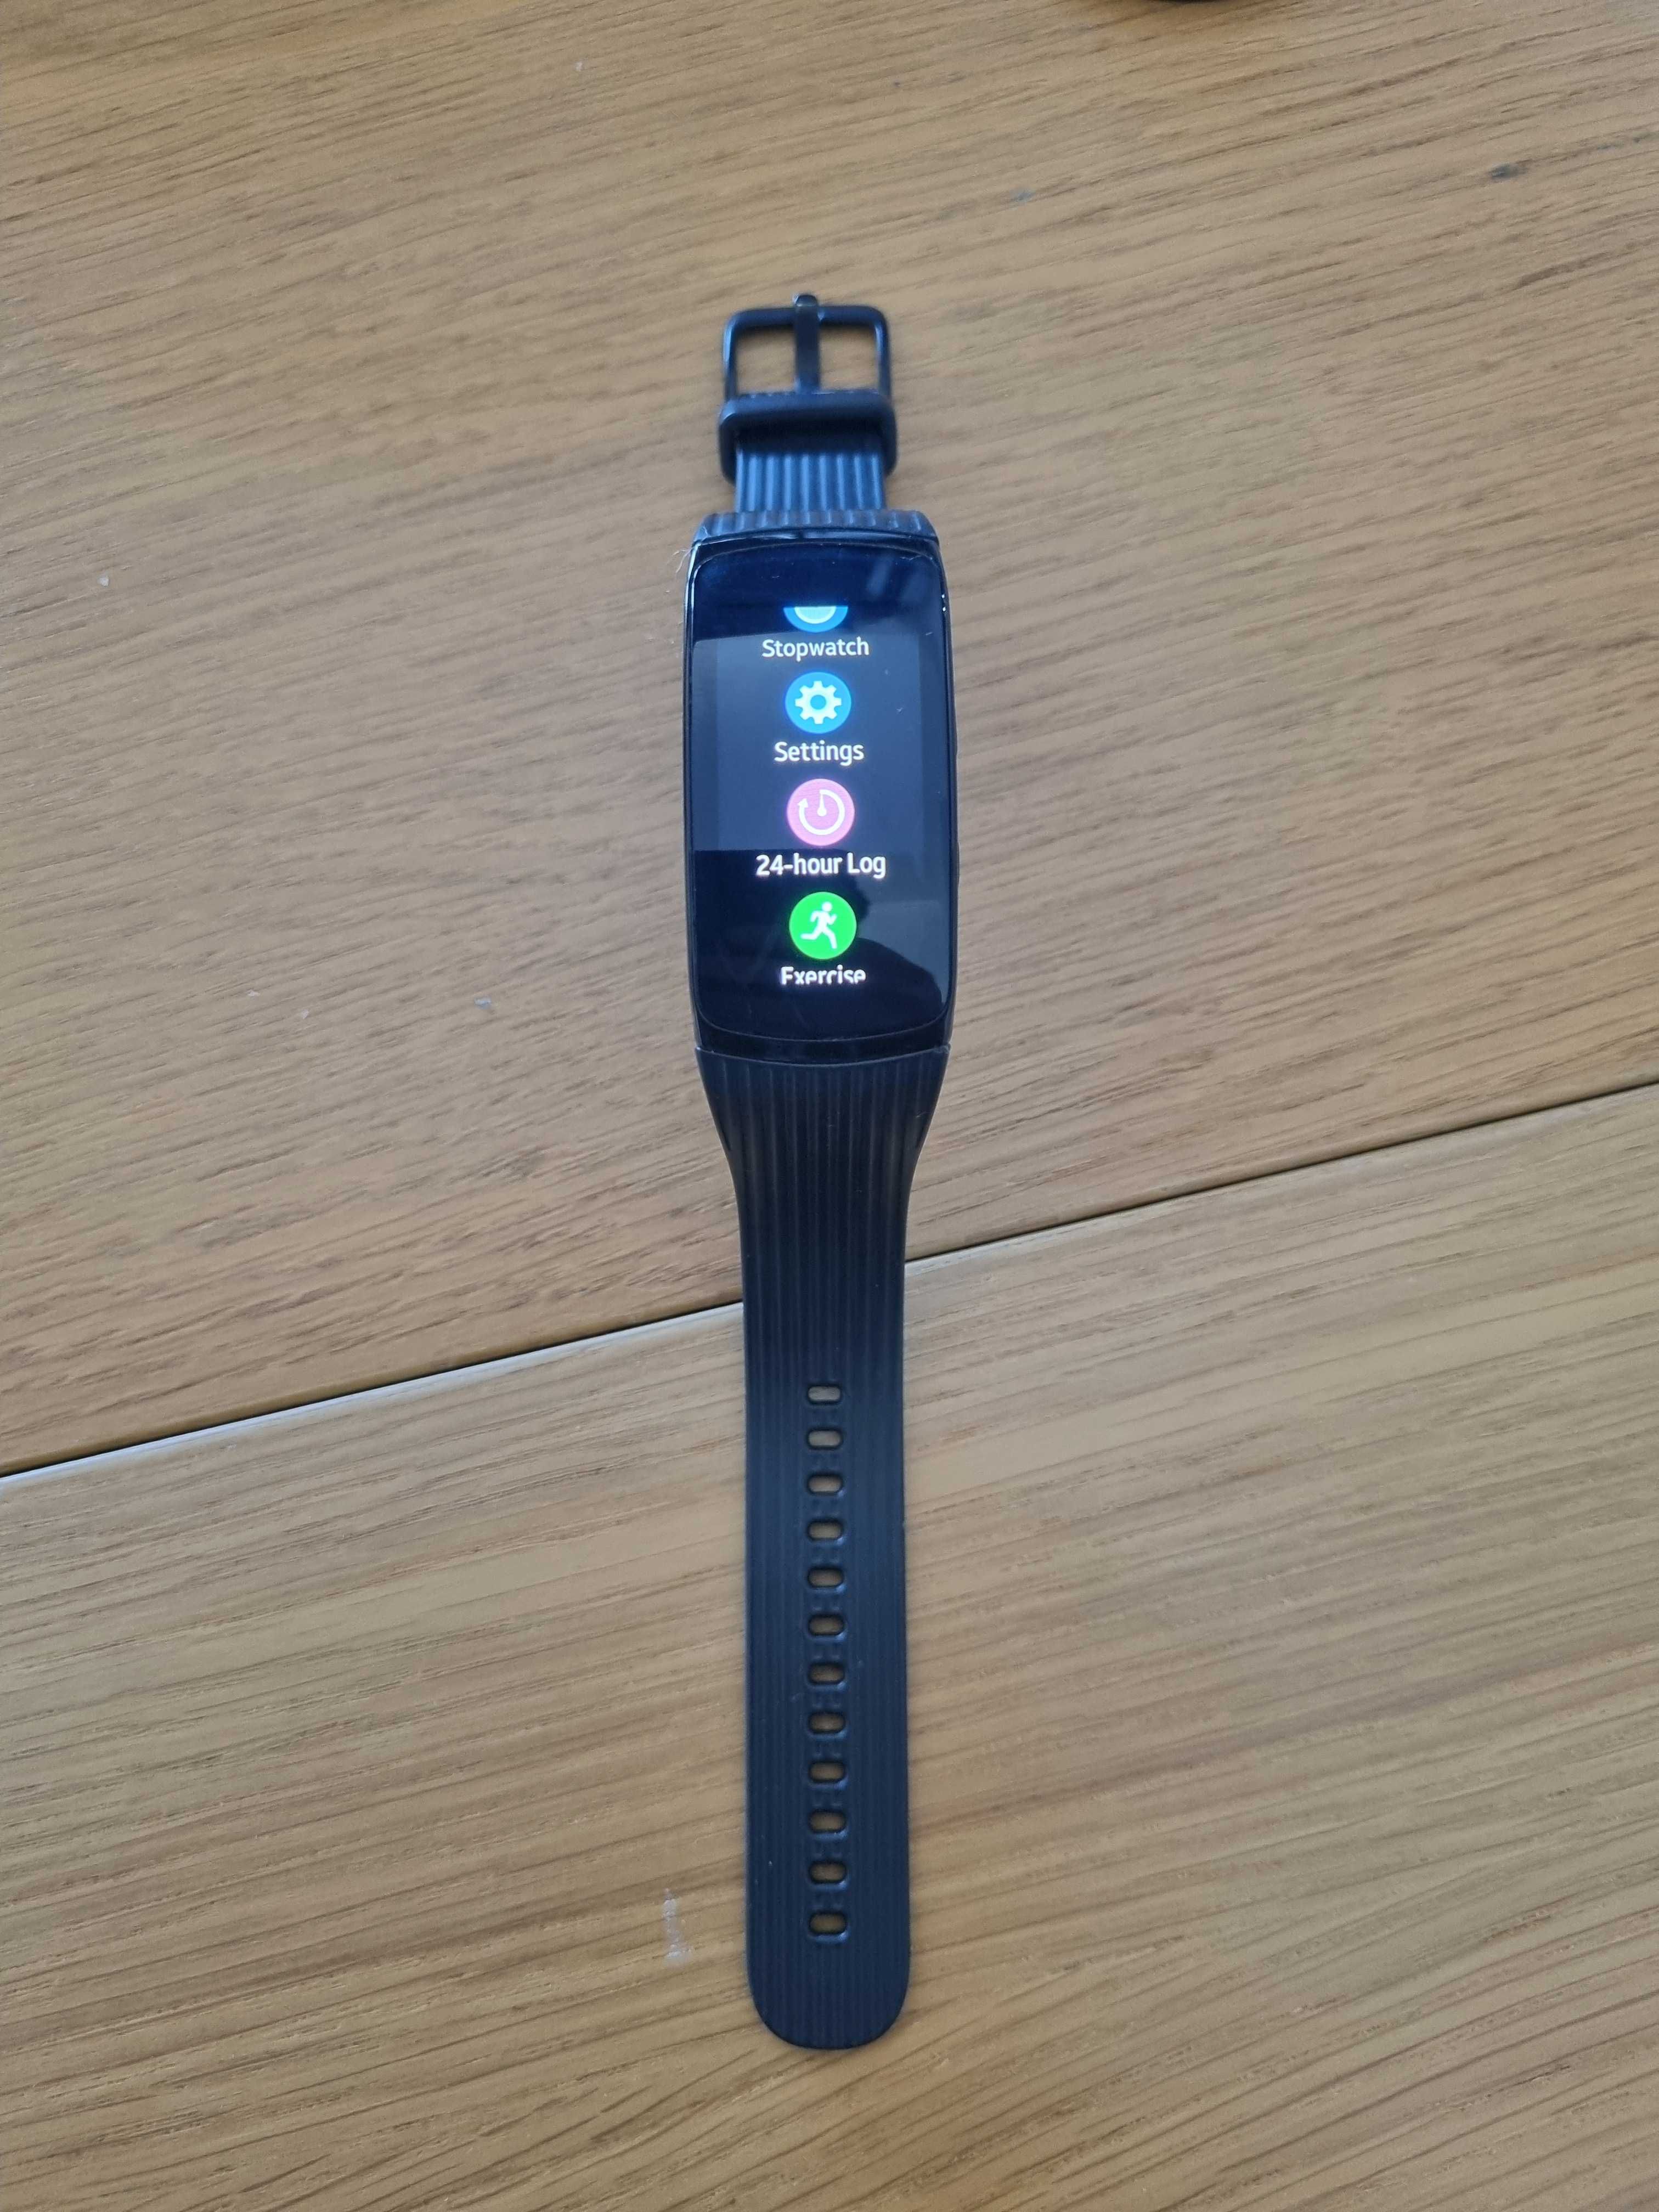 Samsung Gear Fit2 Pro Smartwatch Smartband  (Como novo)